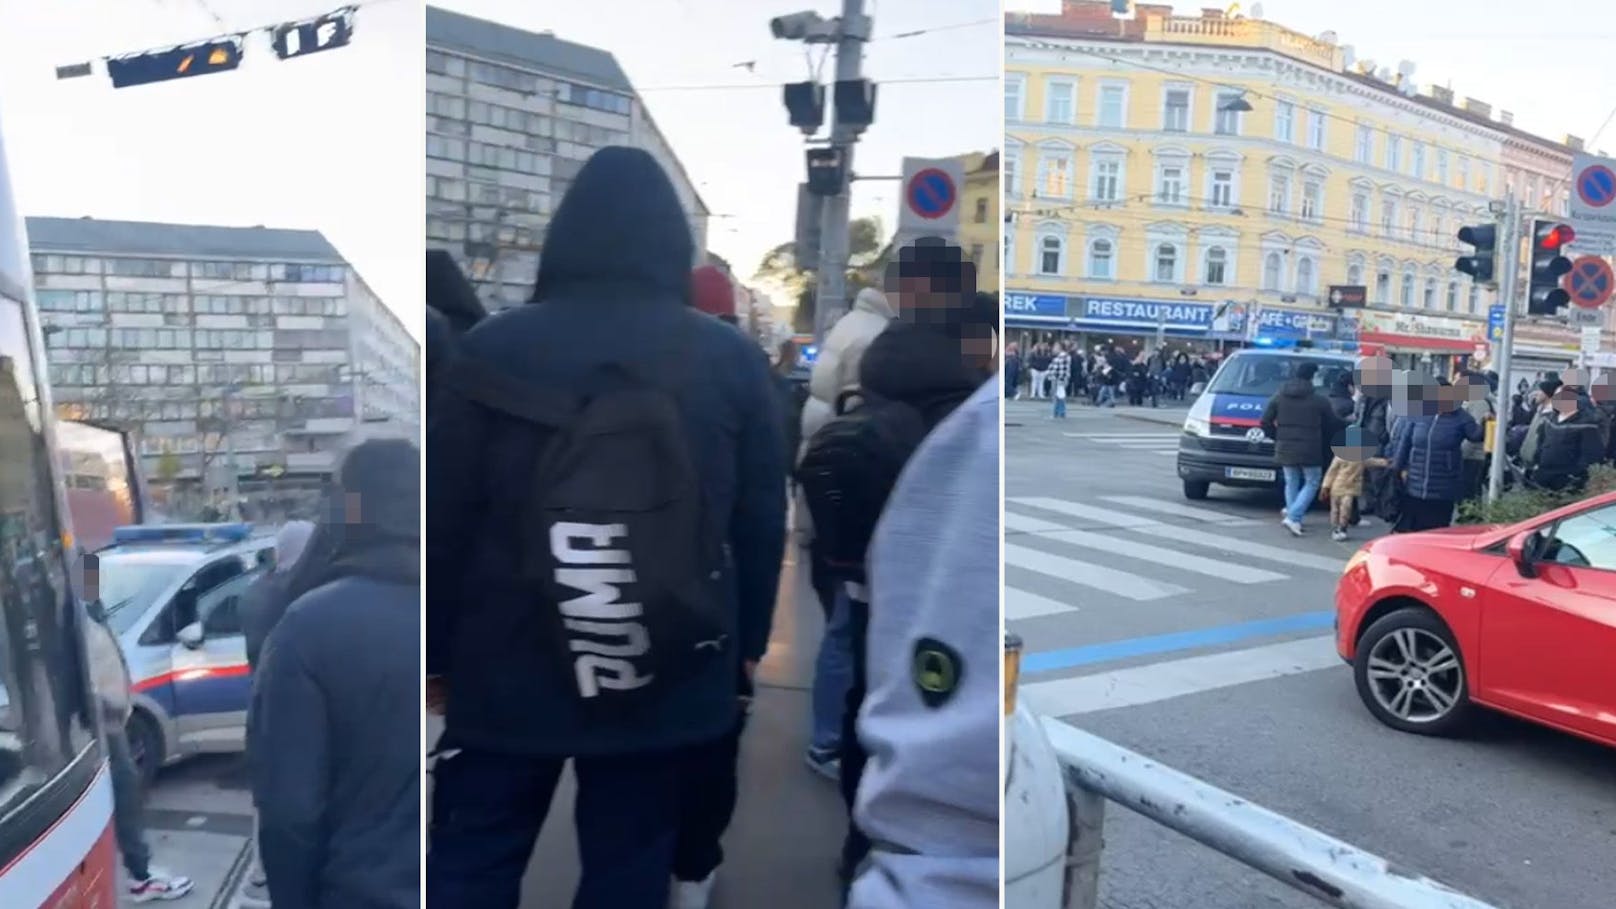 Frauen prügeln sich in Wiener Bim, Polizei greift ein